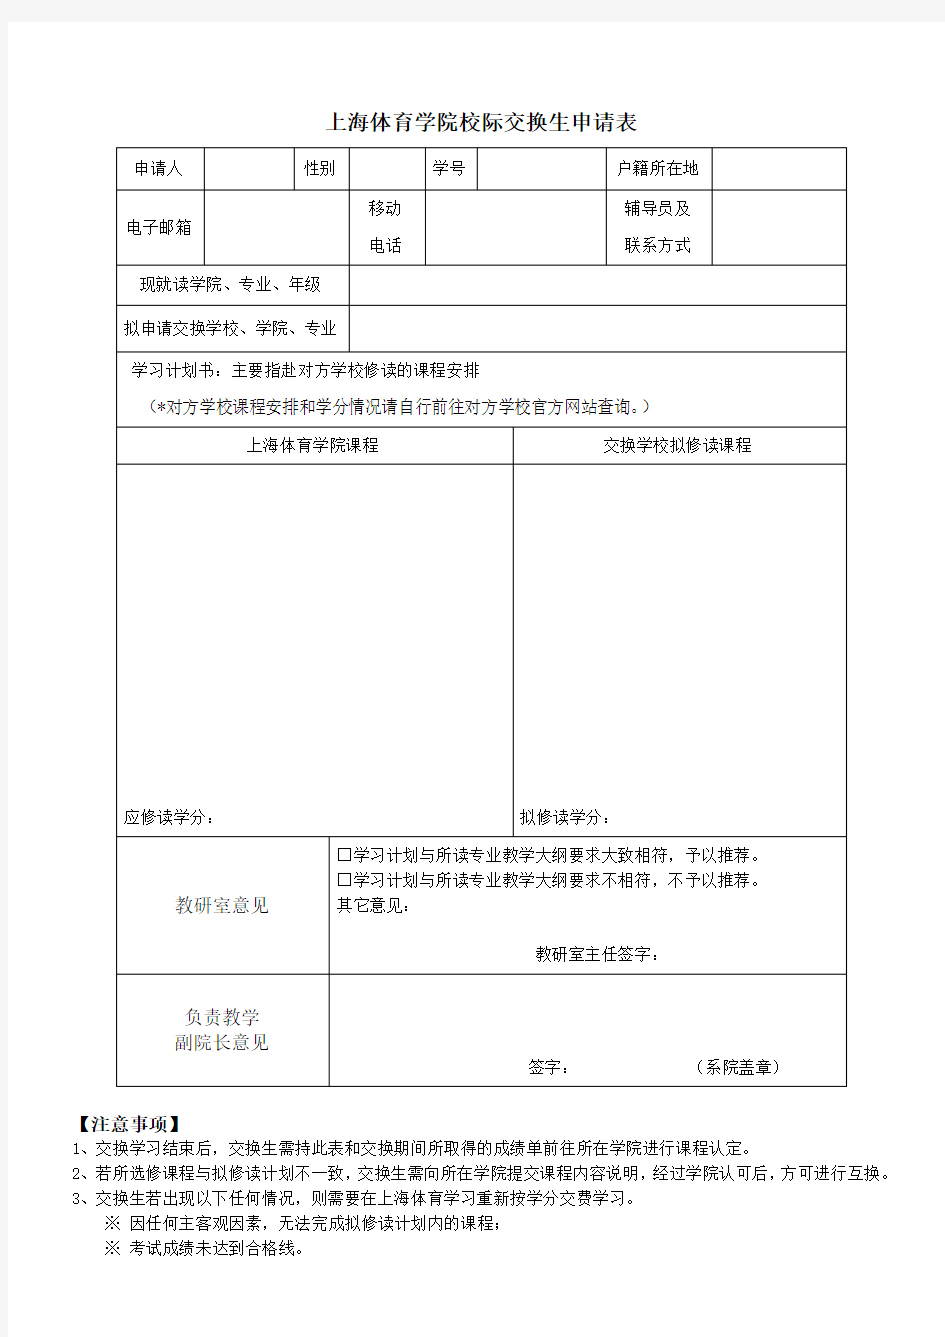 上海体育学院校际交换生申请表